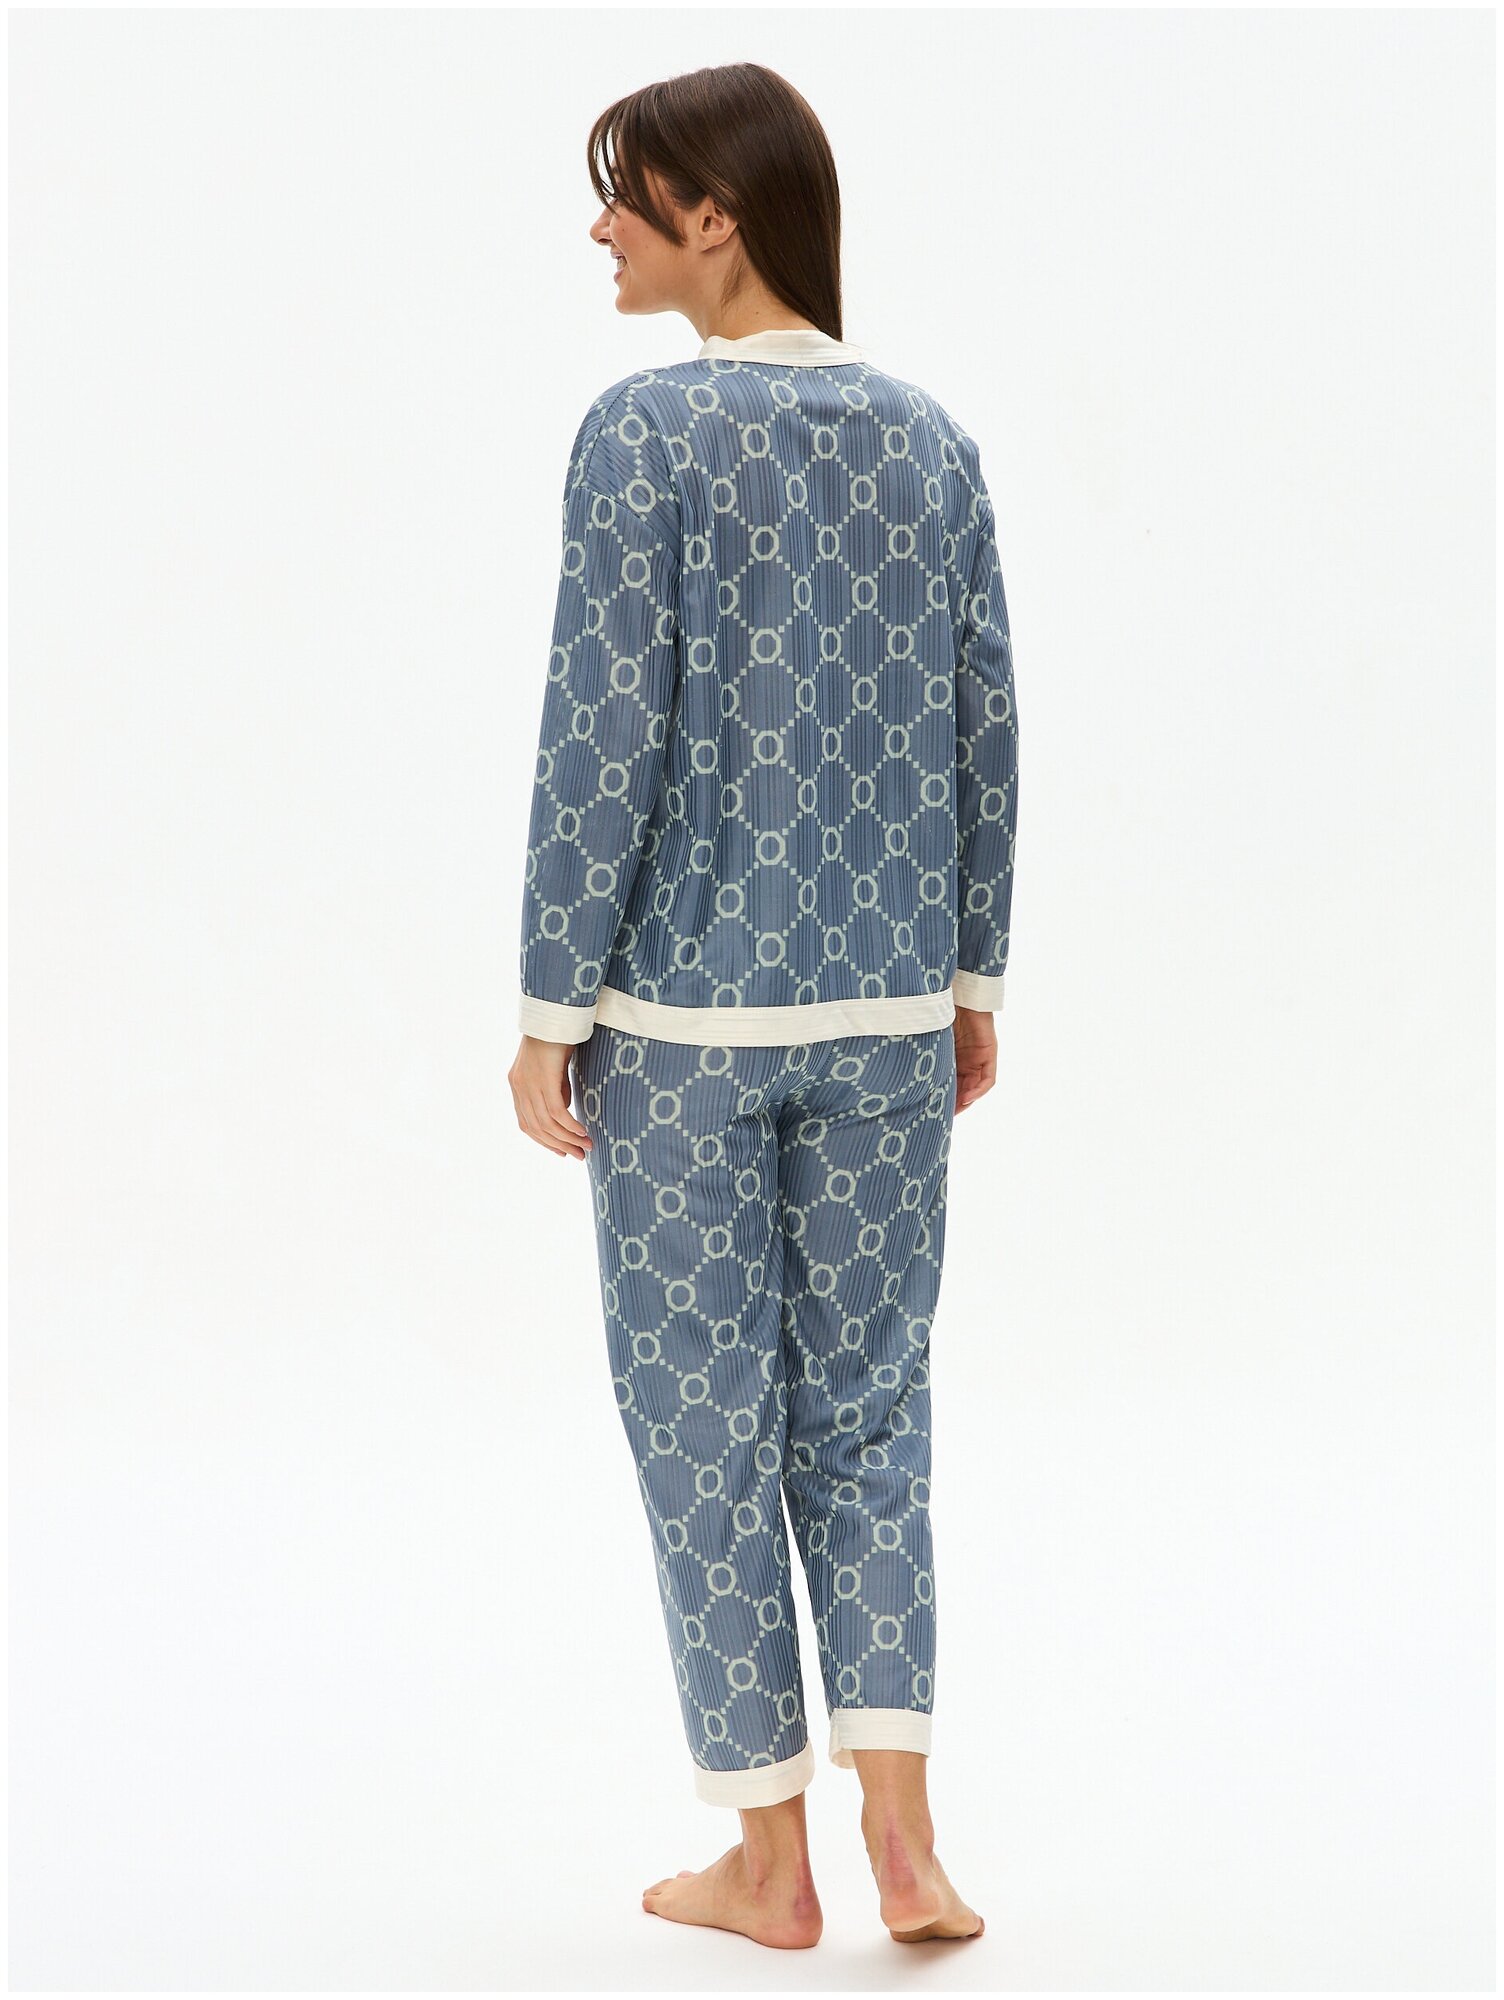 Пижама женская с брюками и рубашкой для сна, домашняя одежда 48/XXL размер - фотография № 12